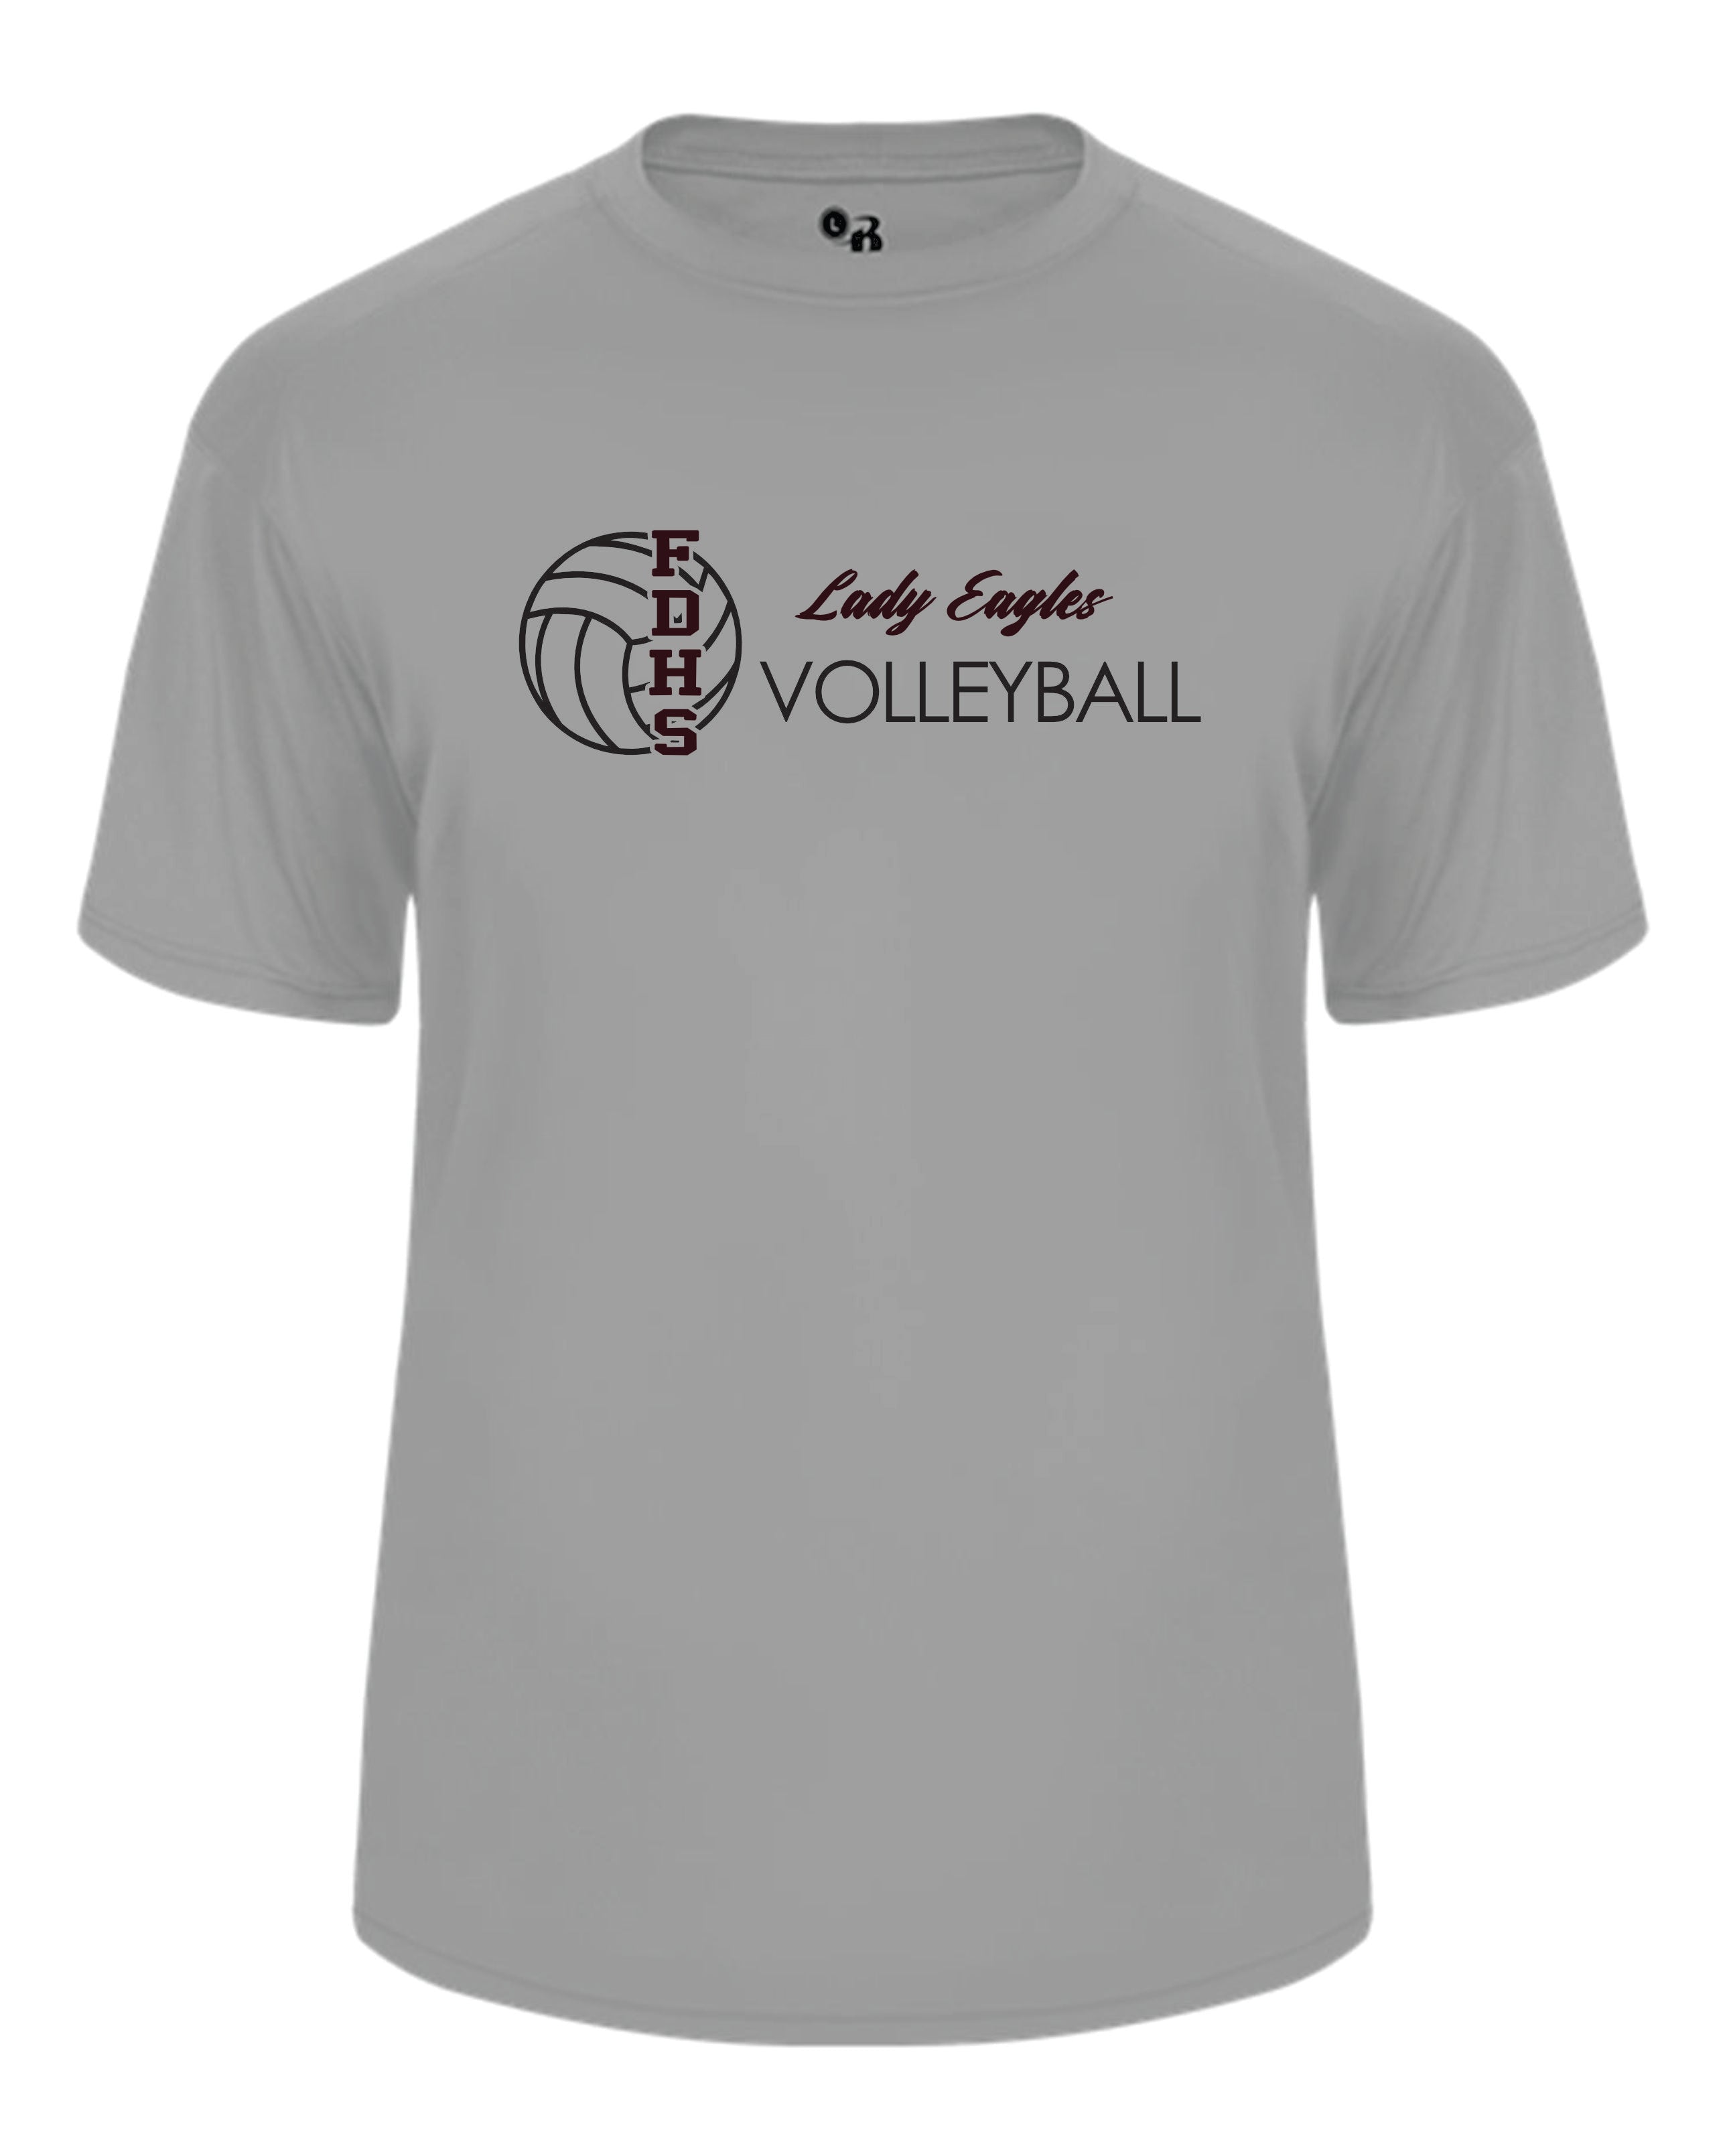 Douglass Volleyball Short Sleeve Badger Dri Fit T shirt-Women